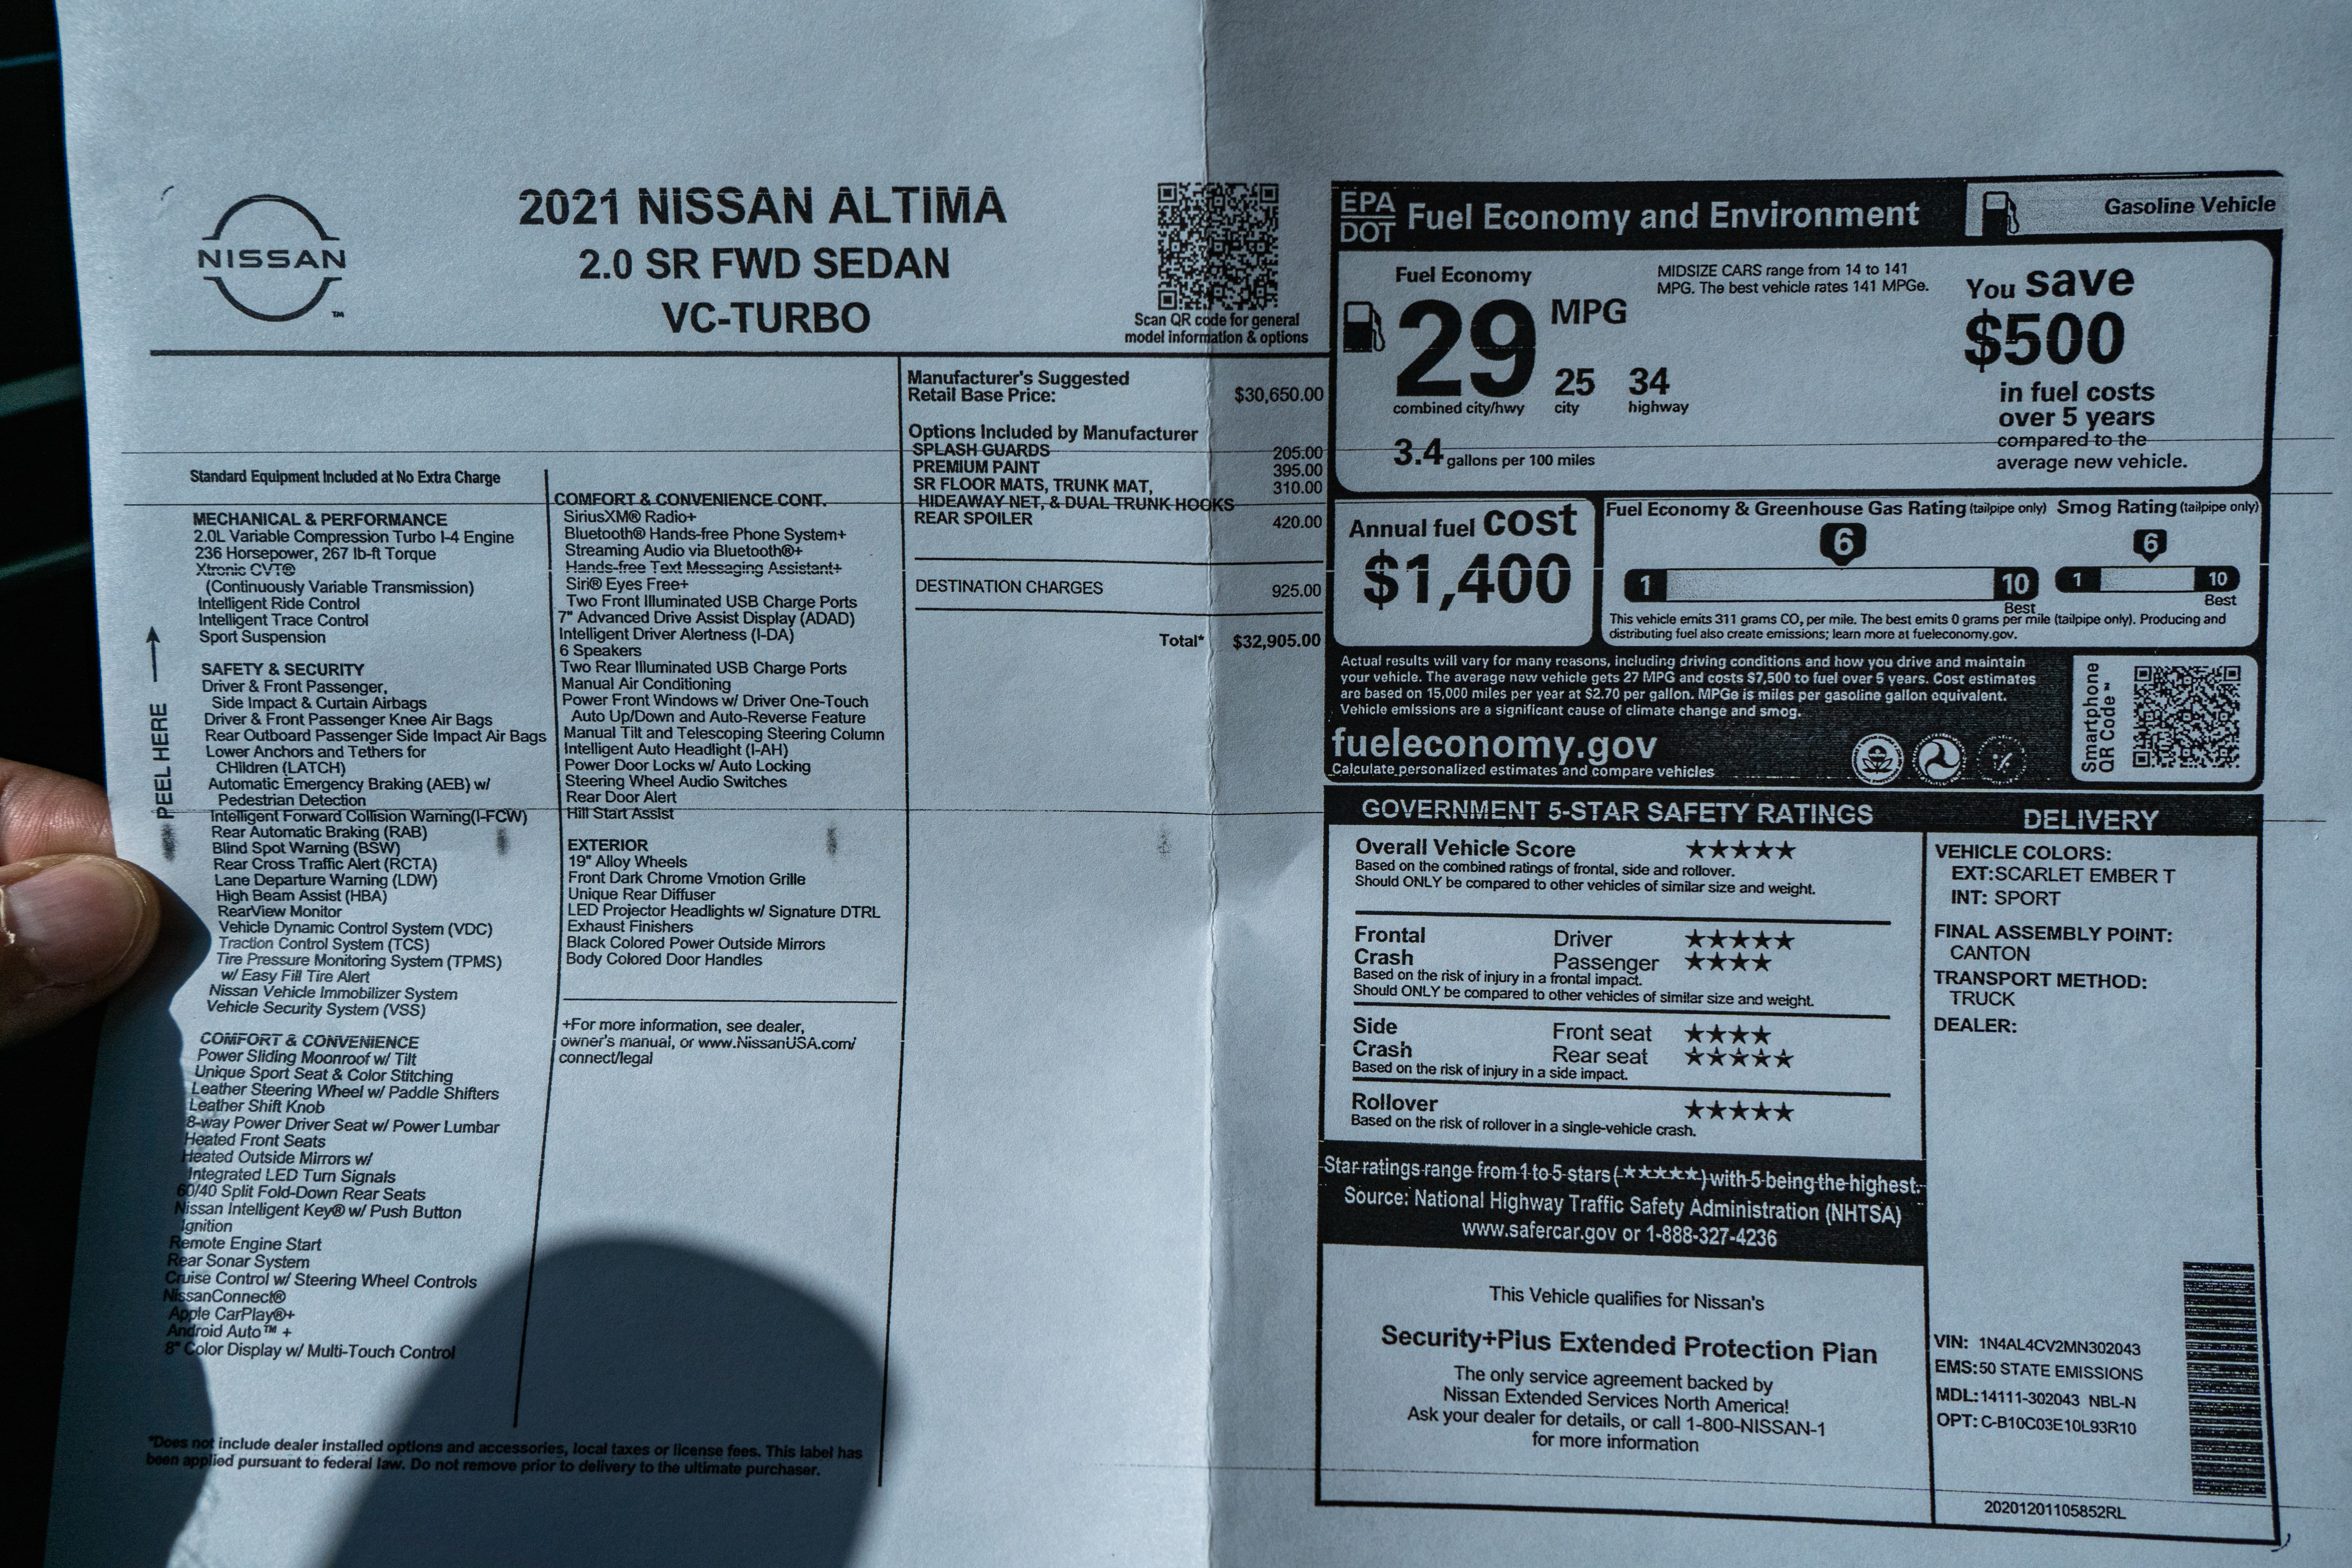 2021 Nissan Altima - Driven